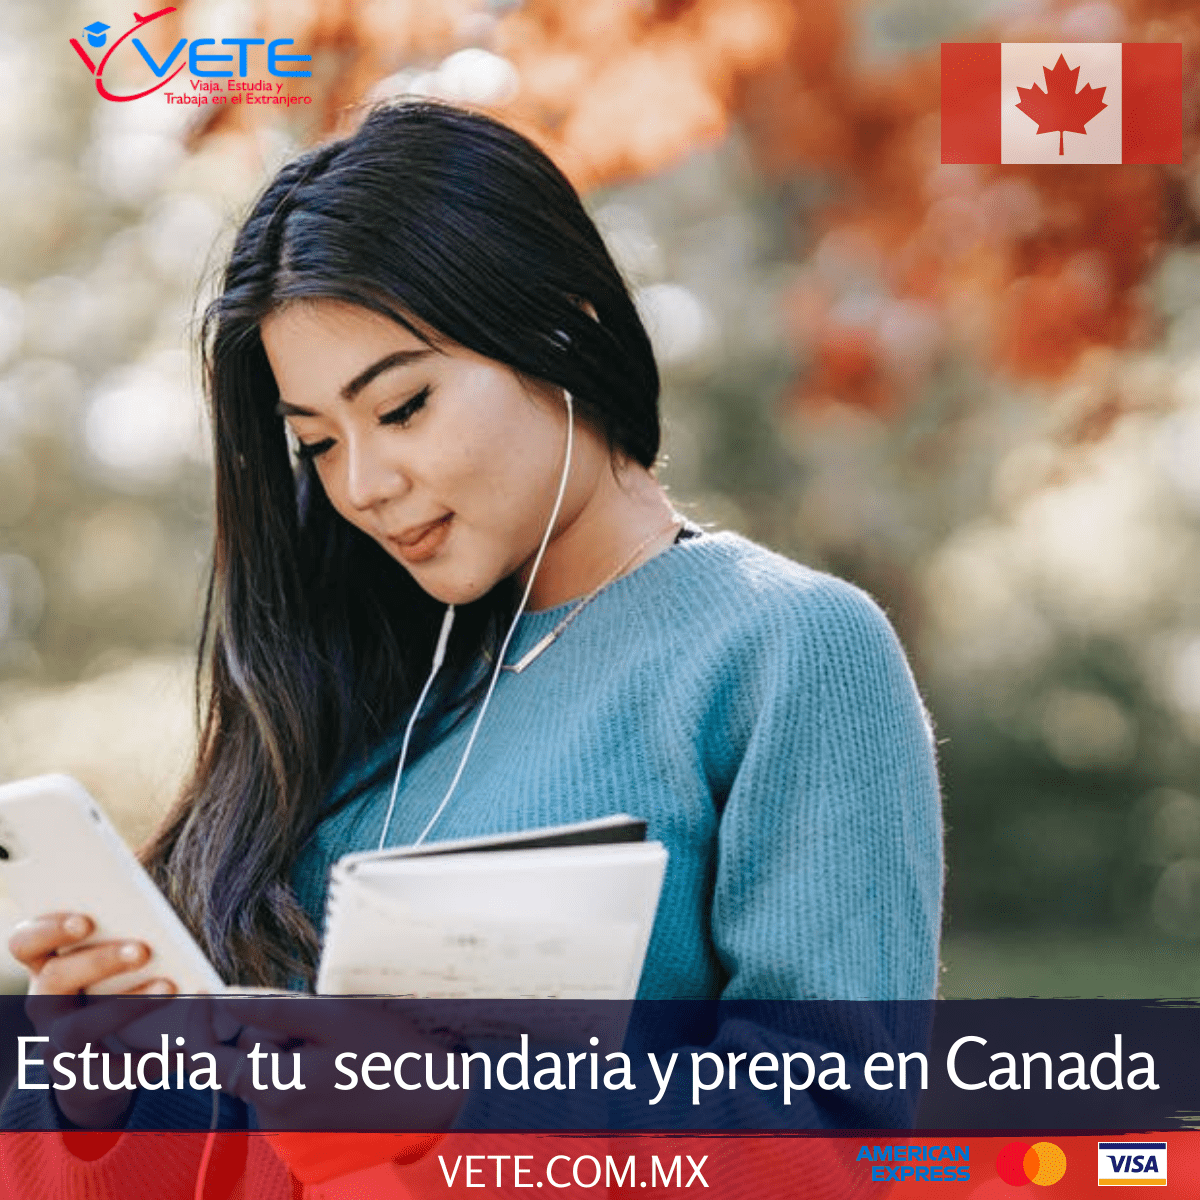 Estudiar en Canada vete education and travel